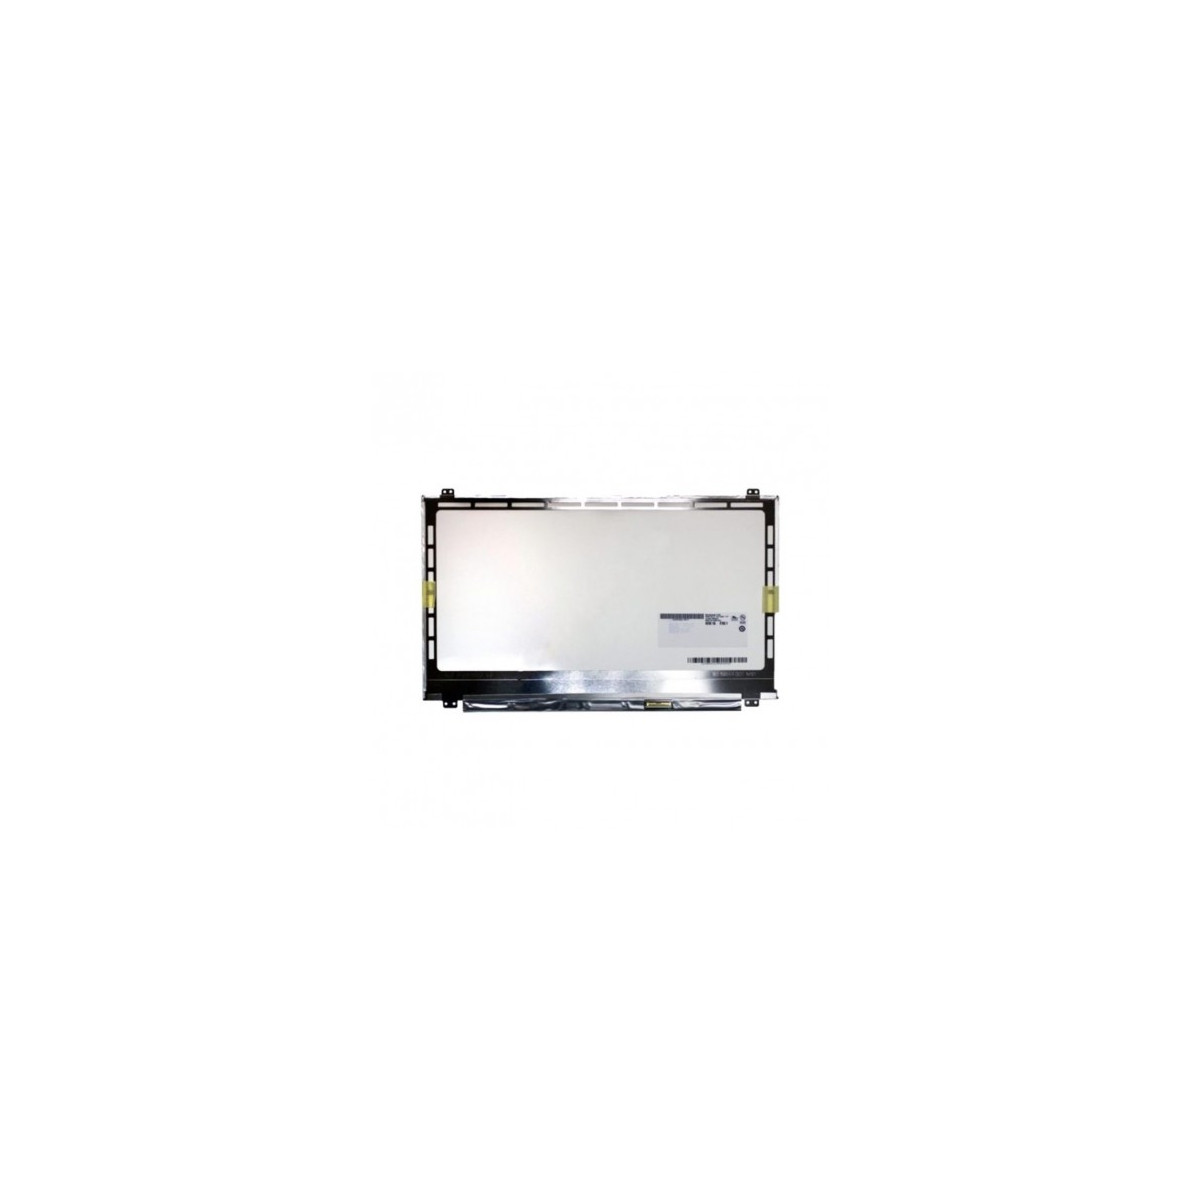 Afficheur Ecran pour PC Portable 15.4" LCD